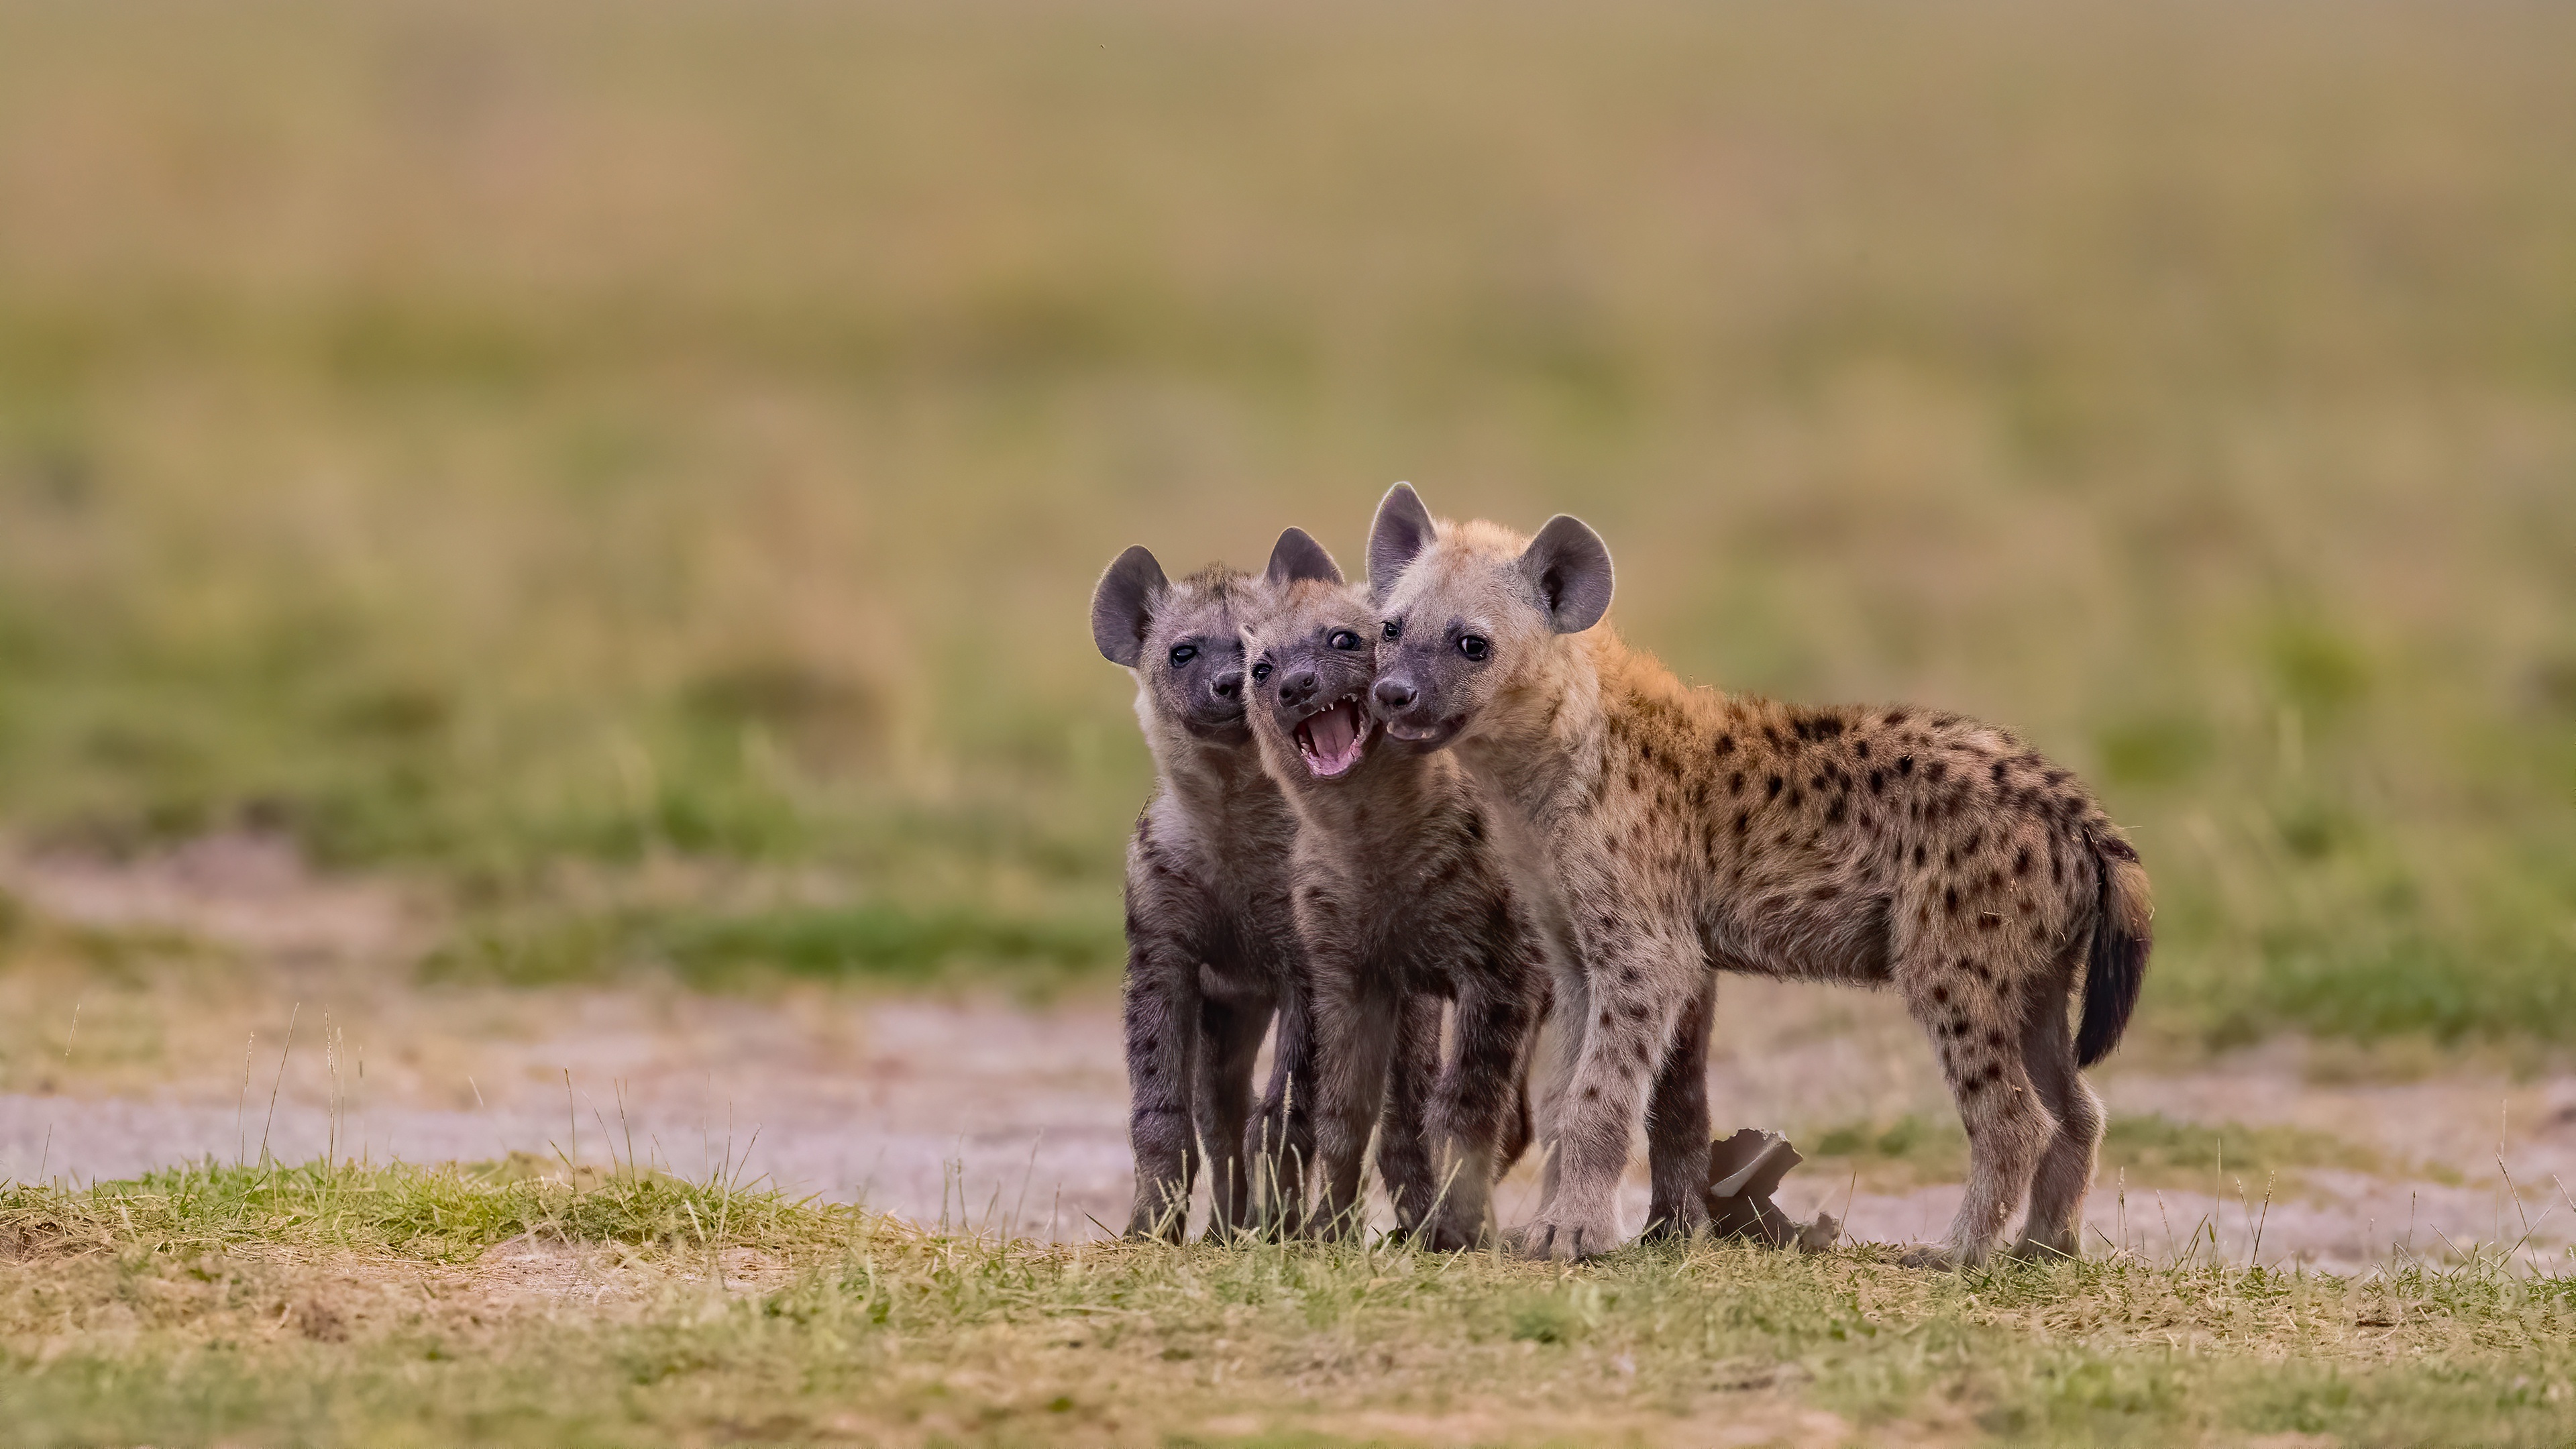 Young hyenas, Hyena Wallpaper, 3840x2160 4K Desktop